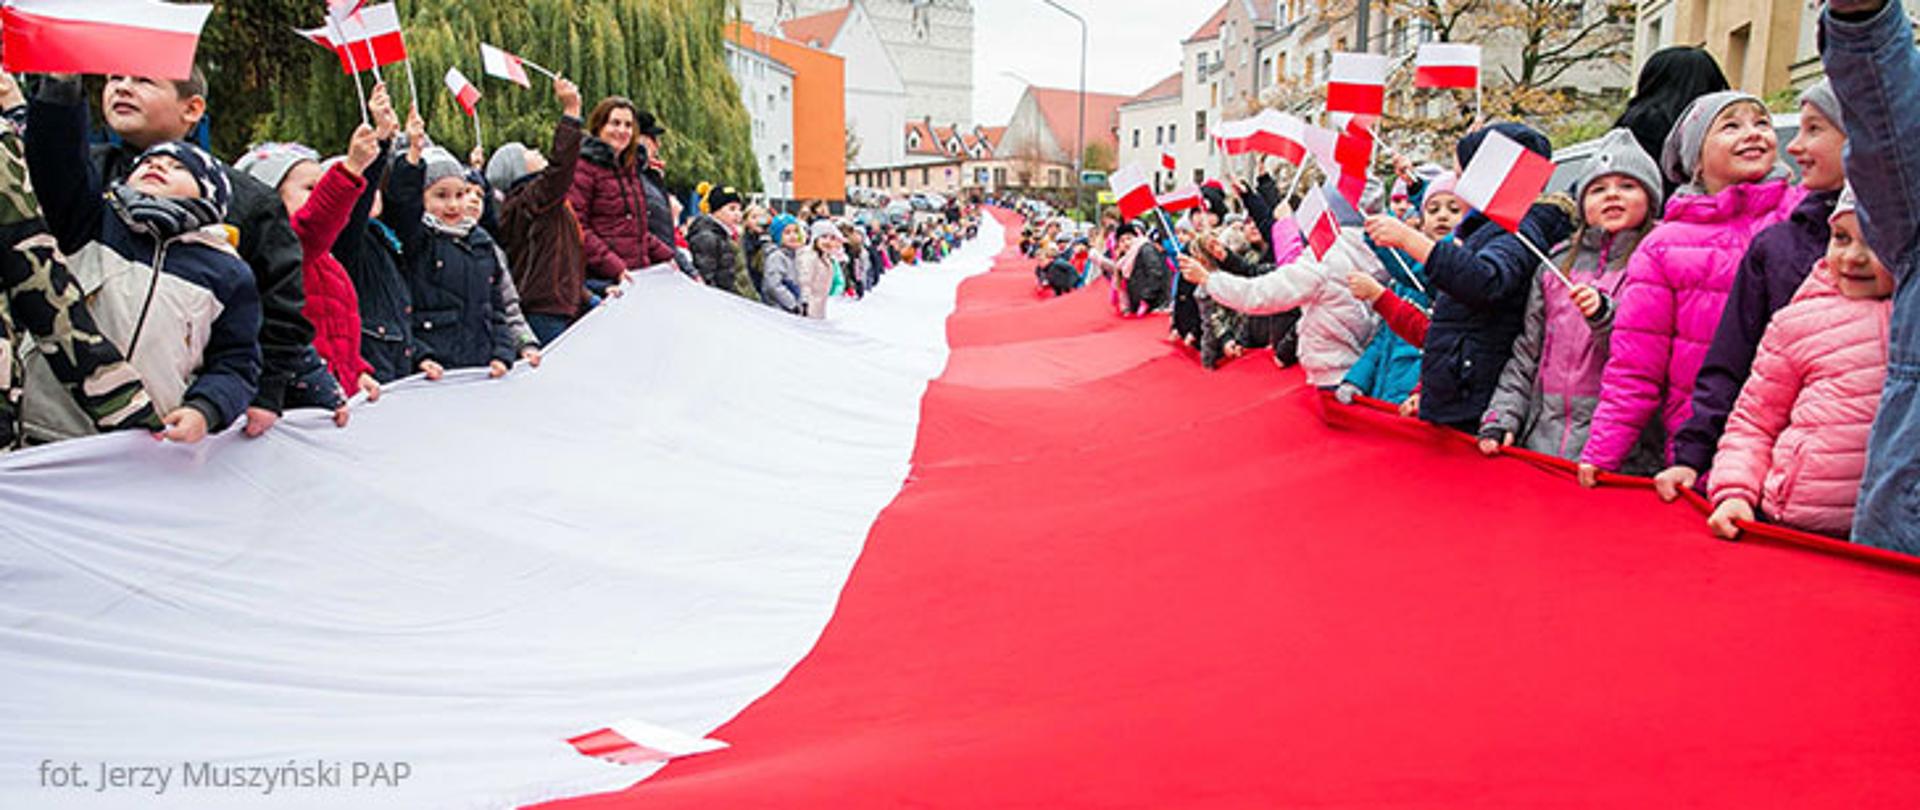 Dia da Bandeira da República da Polónia